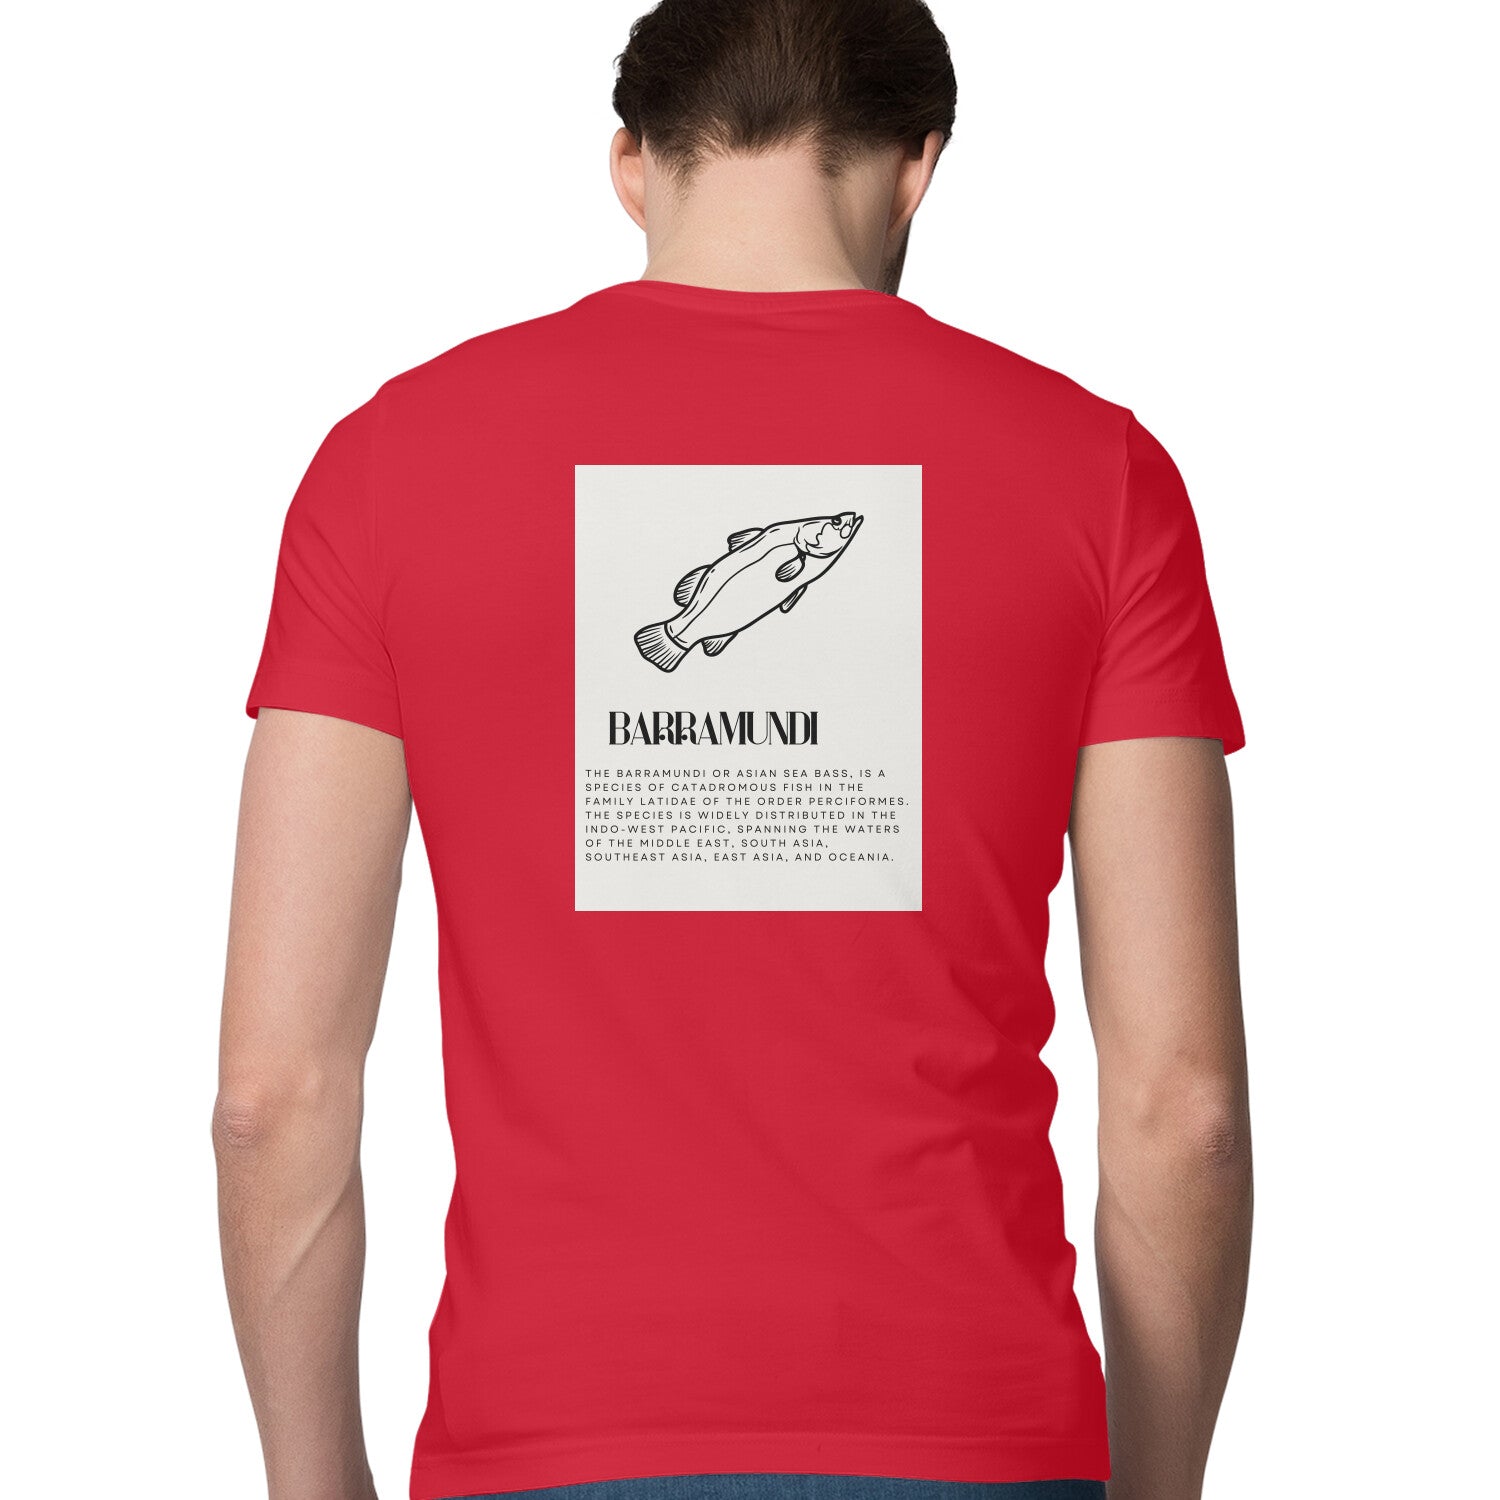 पुरुषों की एंग्लिंग टी-शर्ट | बारामुंडी - आगे और पीछे का विवरण | गोल गला | छोटी बाजू | 2 तरफ की प्रिंट |